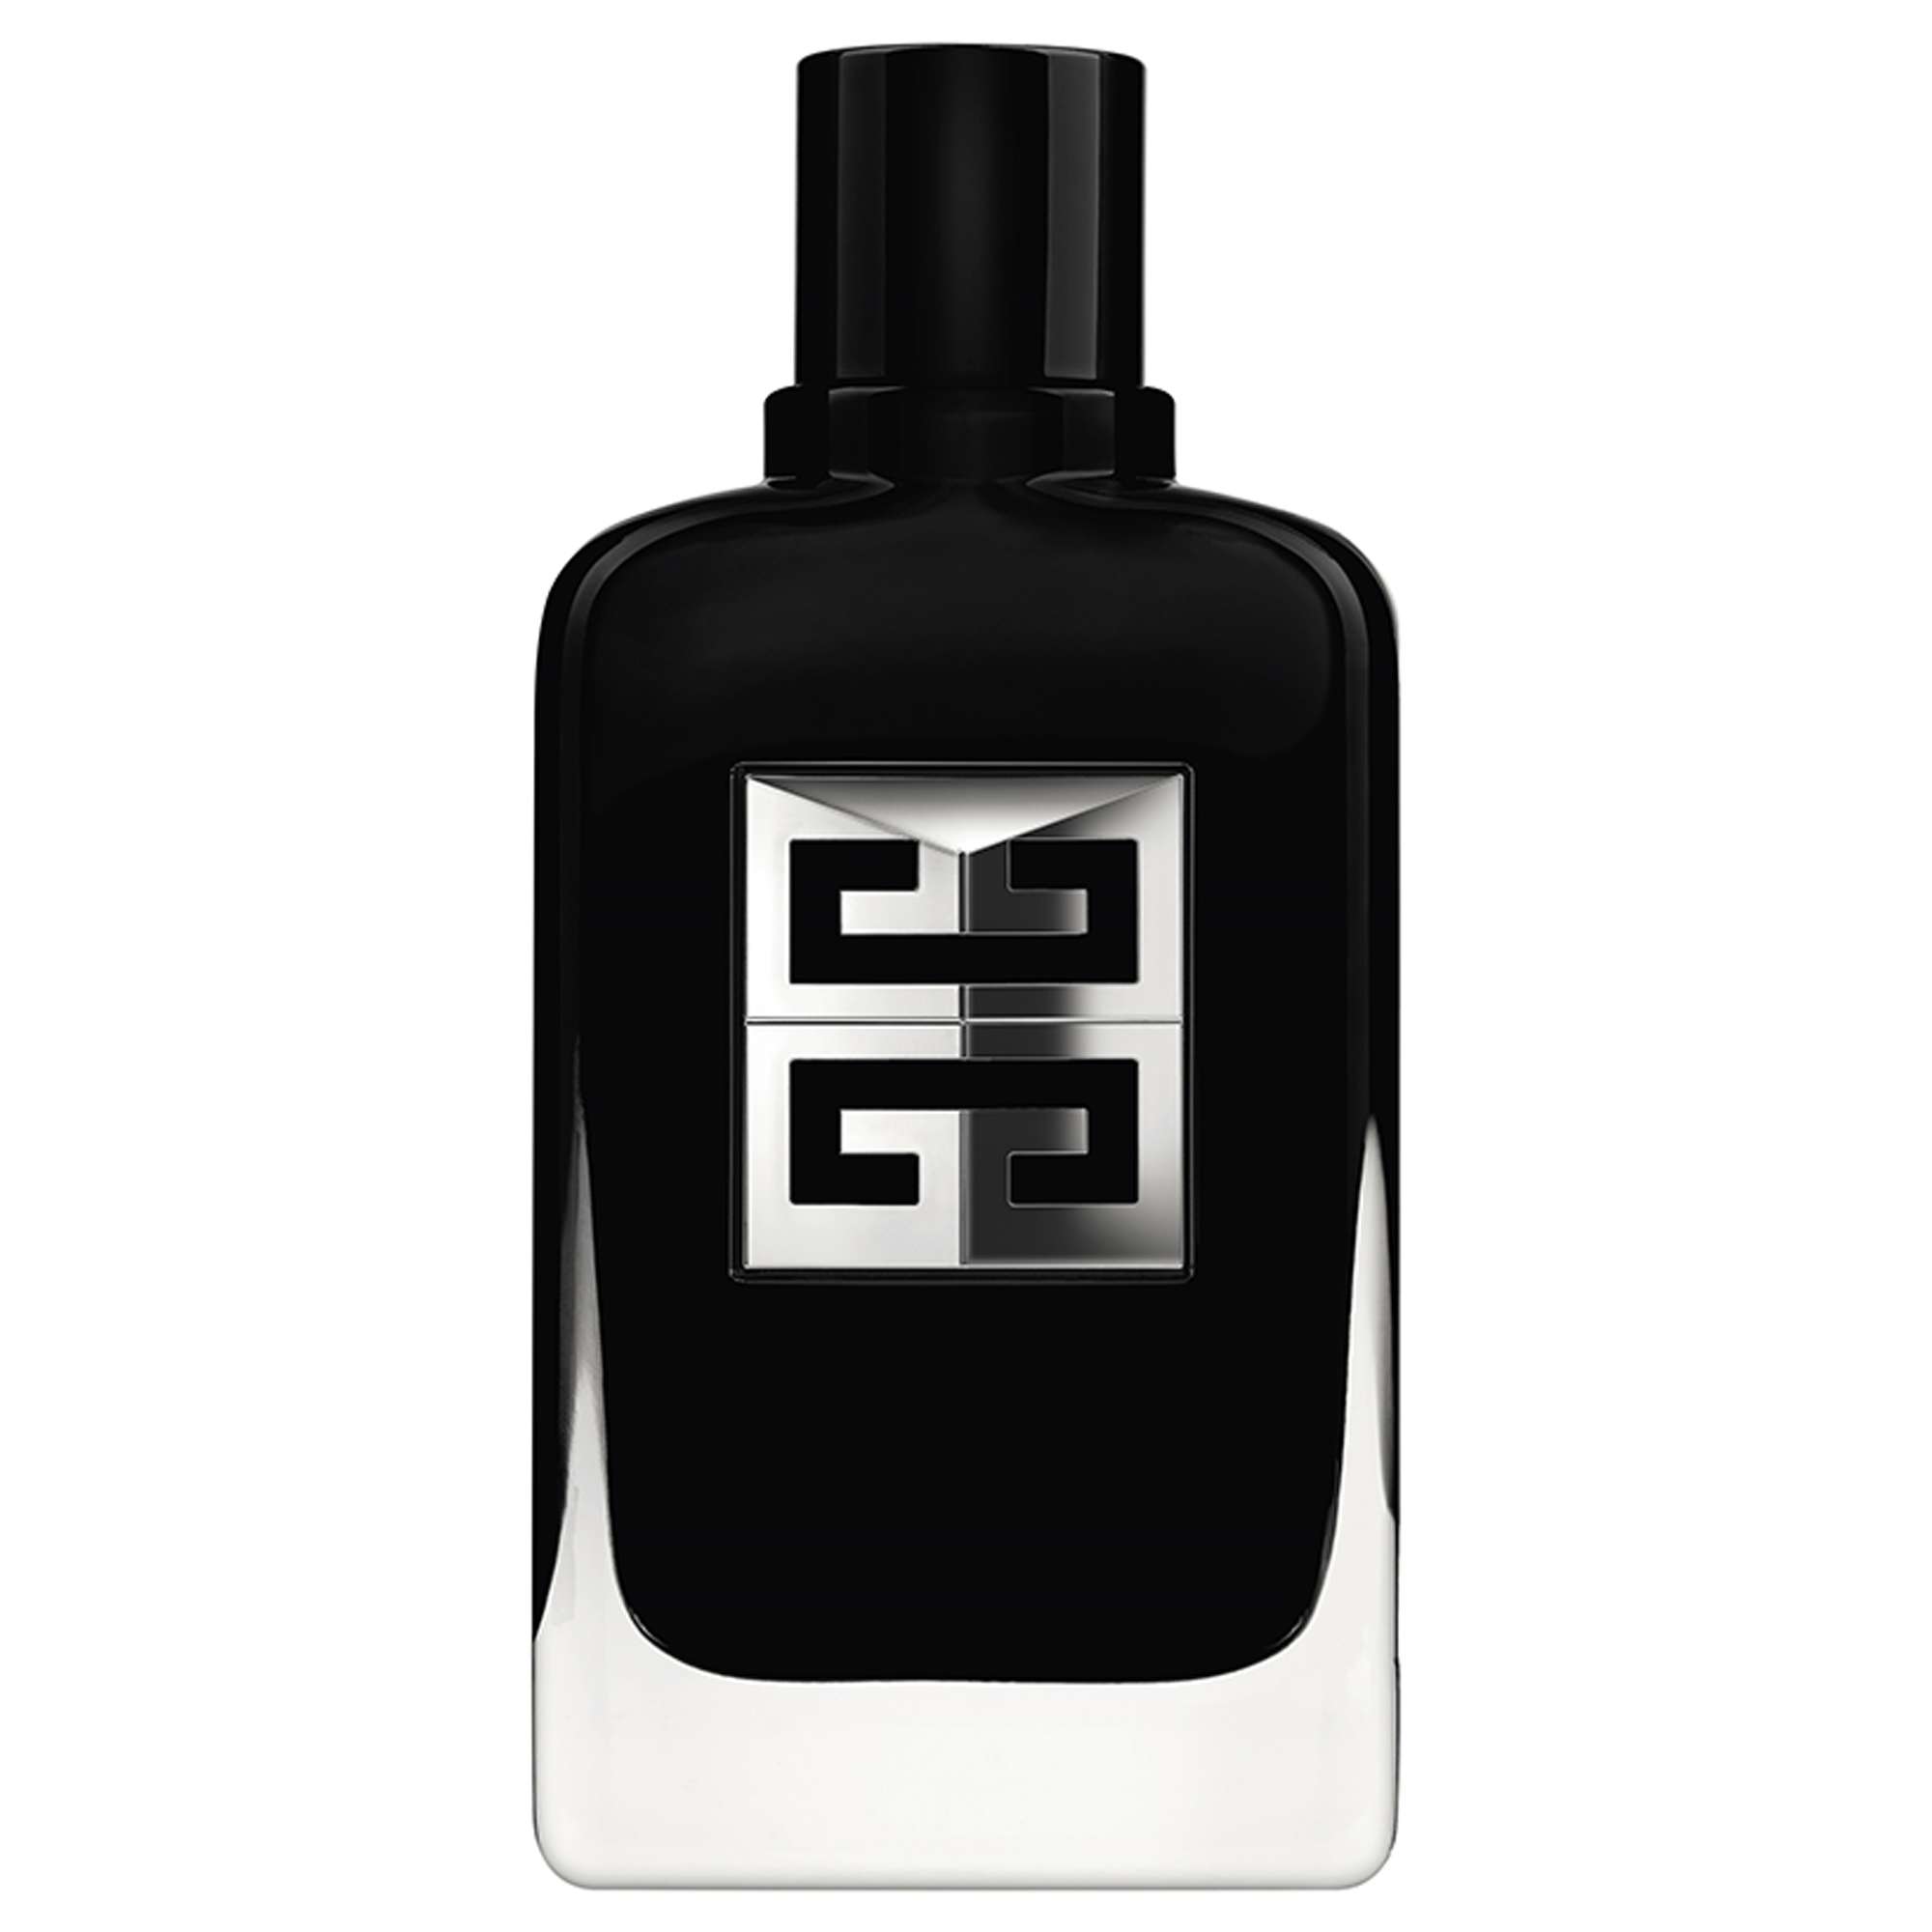 Photos - Women's Fragrance Givenchy Gentleman Society Eau de Parfum 100ml 